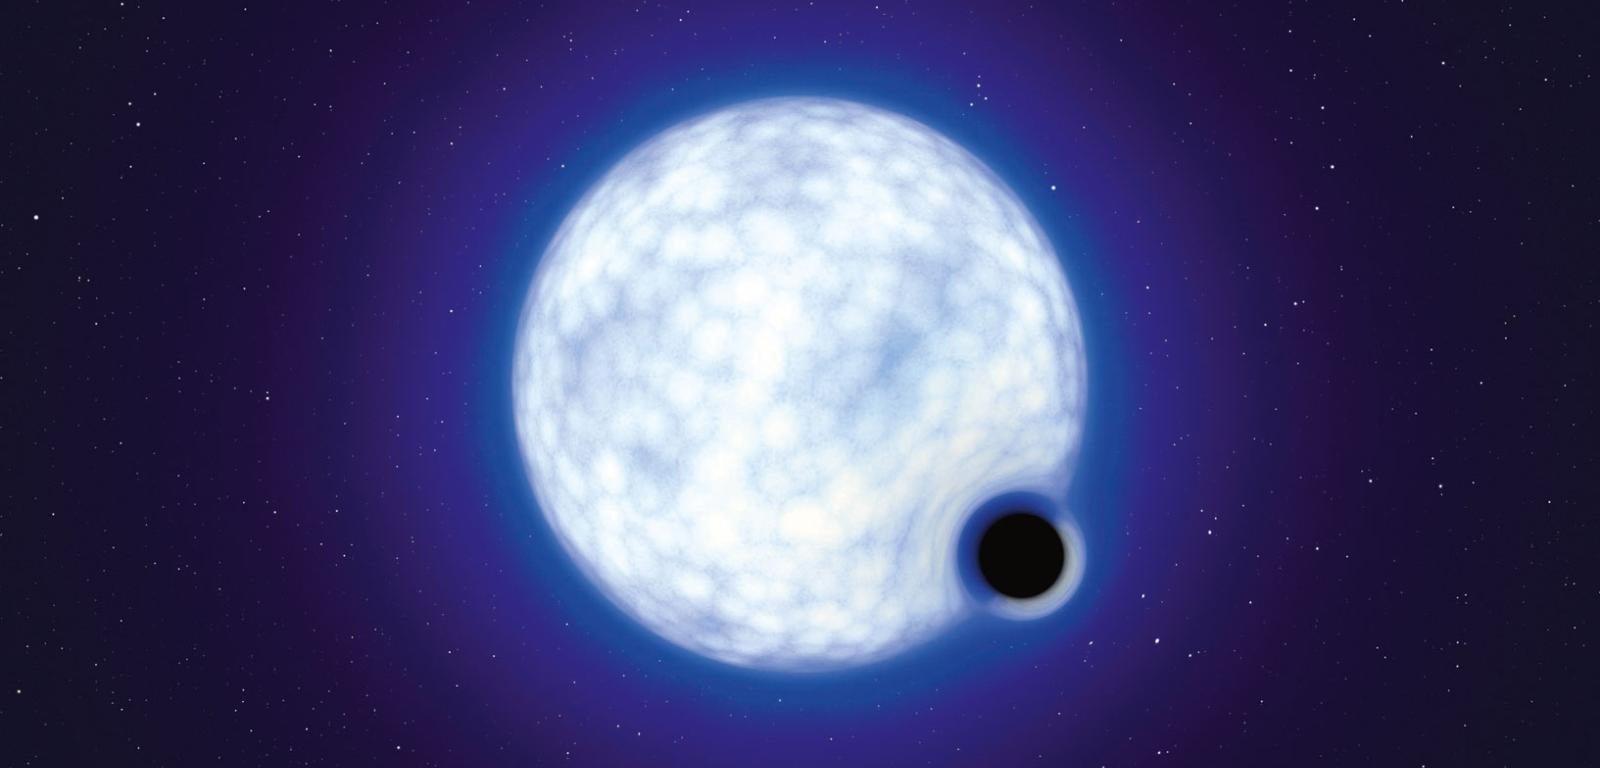 Odnaleziona przez VLT czarna dziura mogła powstać podczas cichej implozji masywnej gwiazdy.